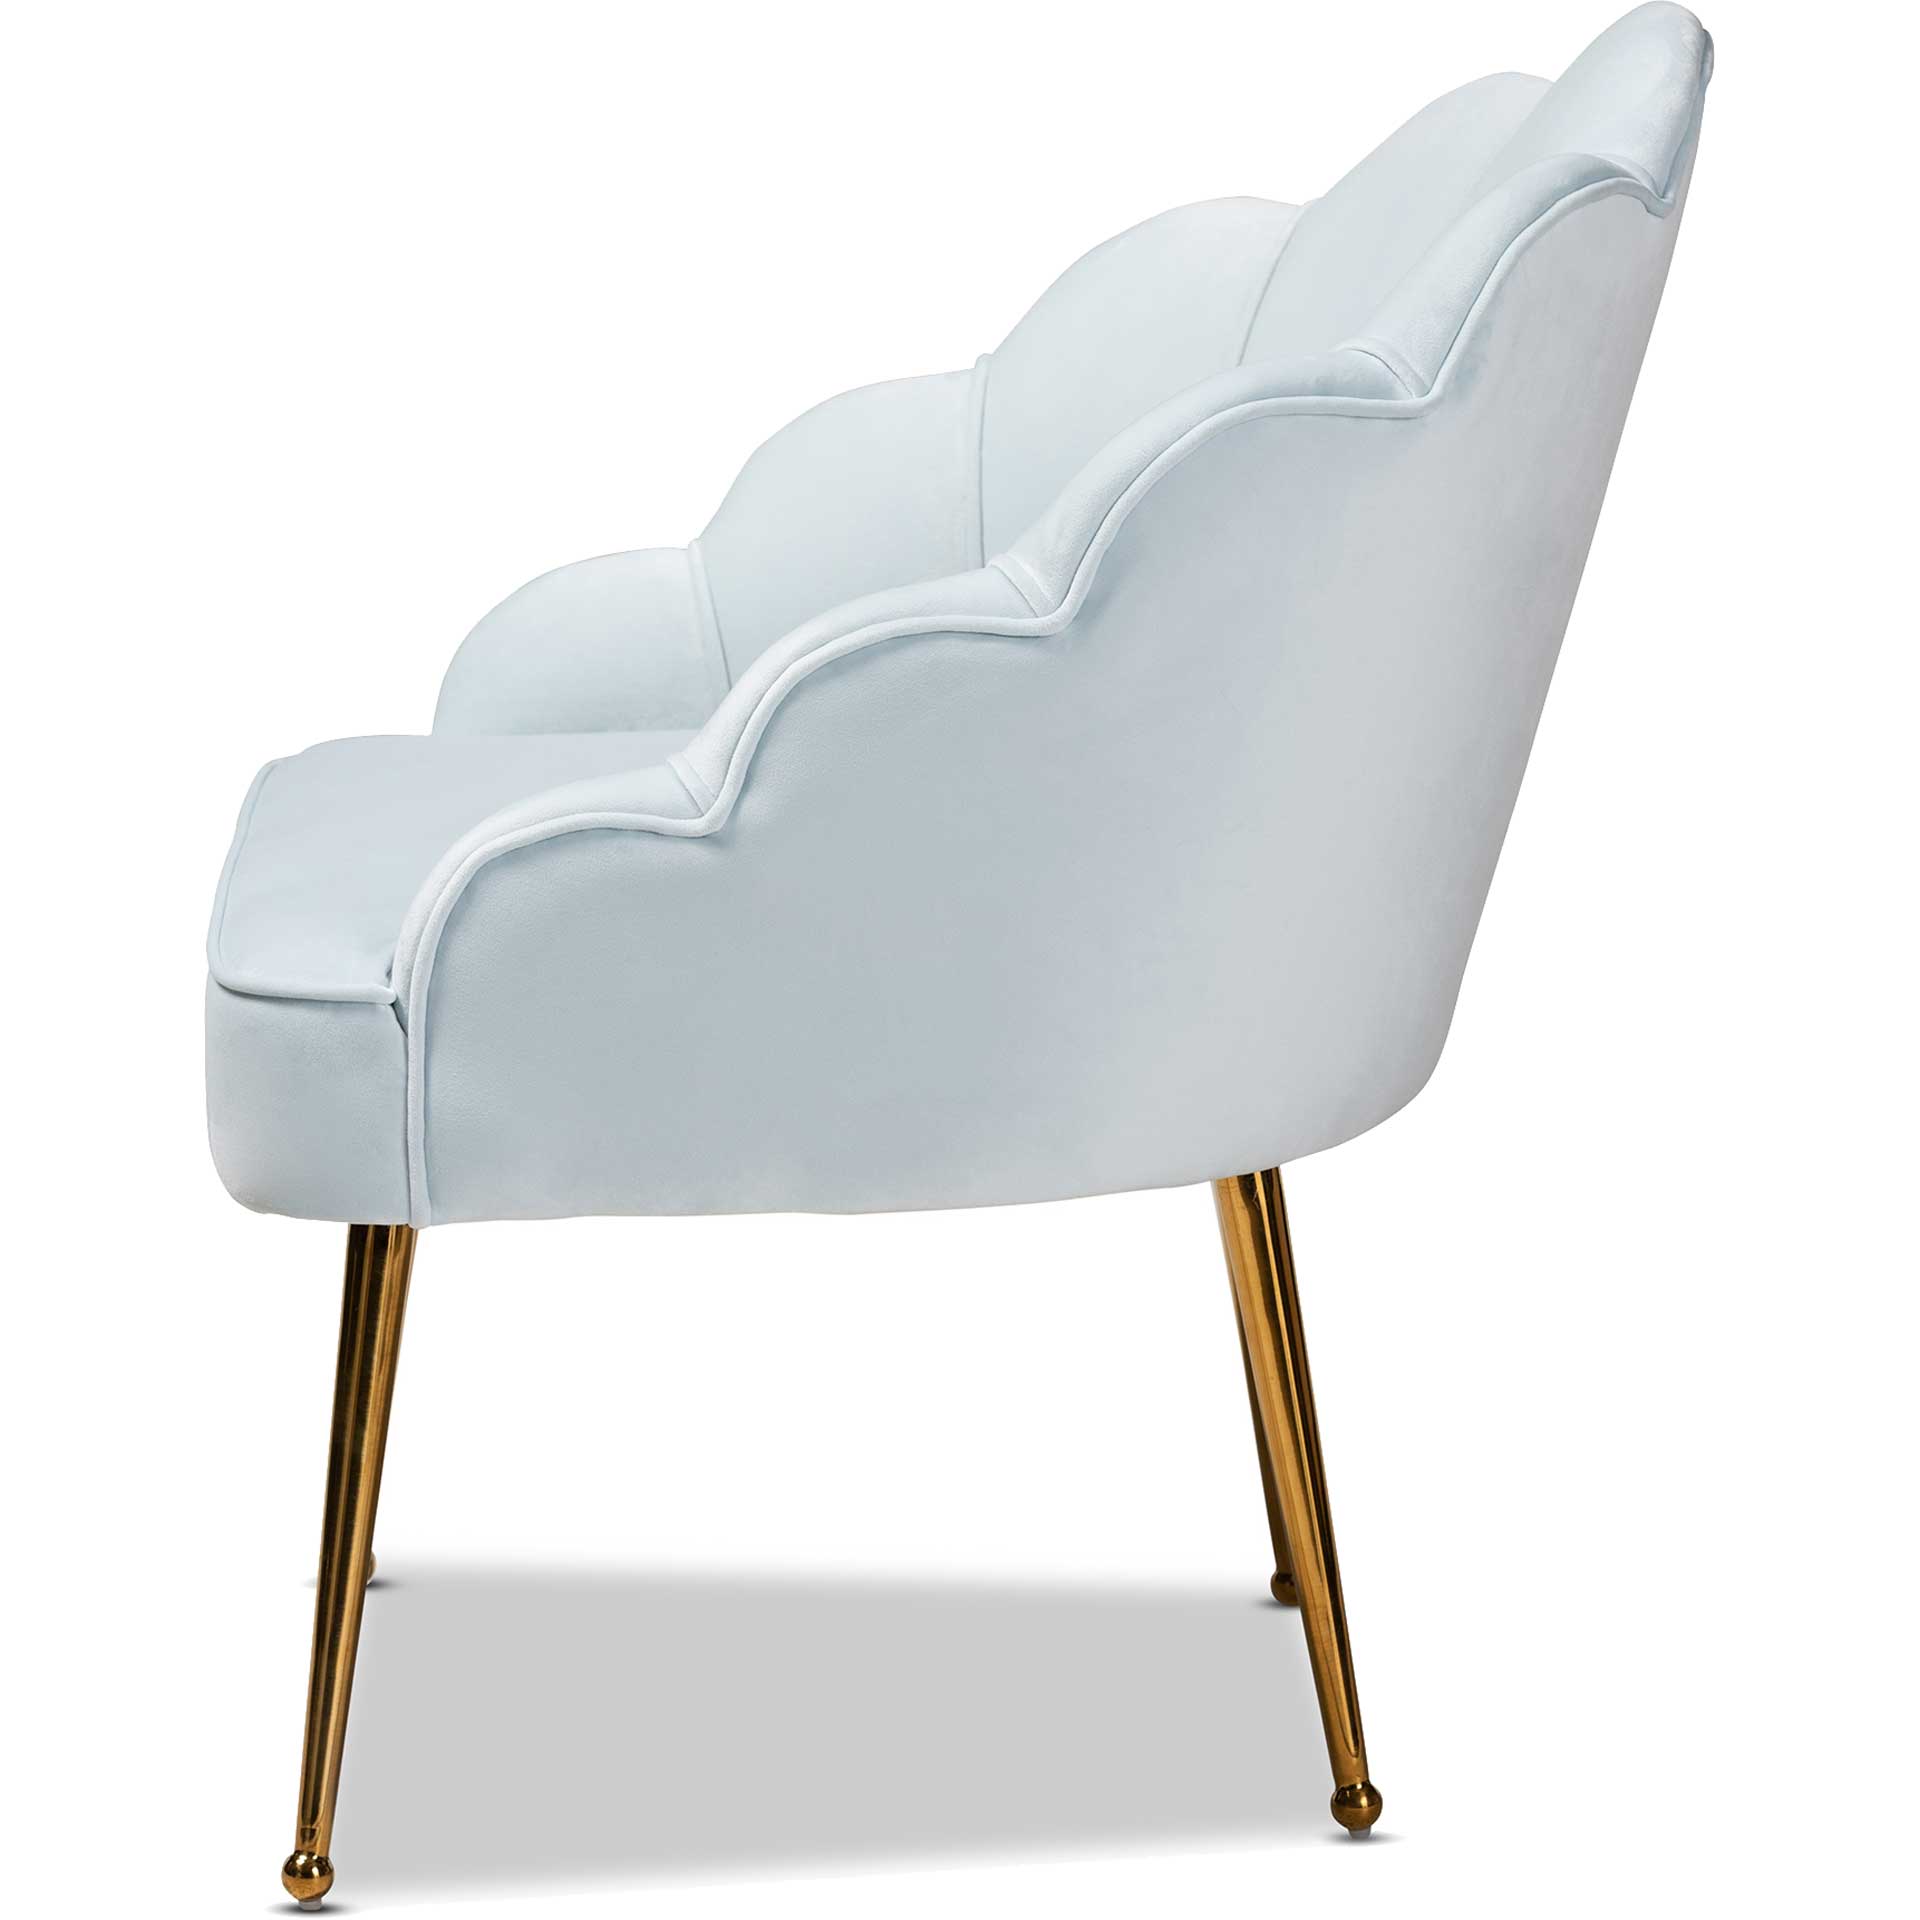 Ciarra Velvet Fabric Upholstered Chair Light Blue/Gold